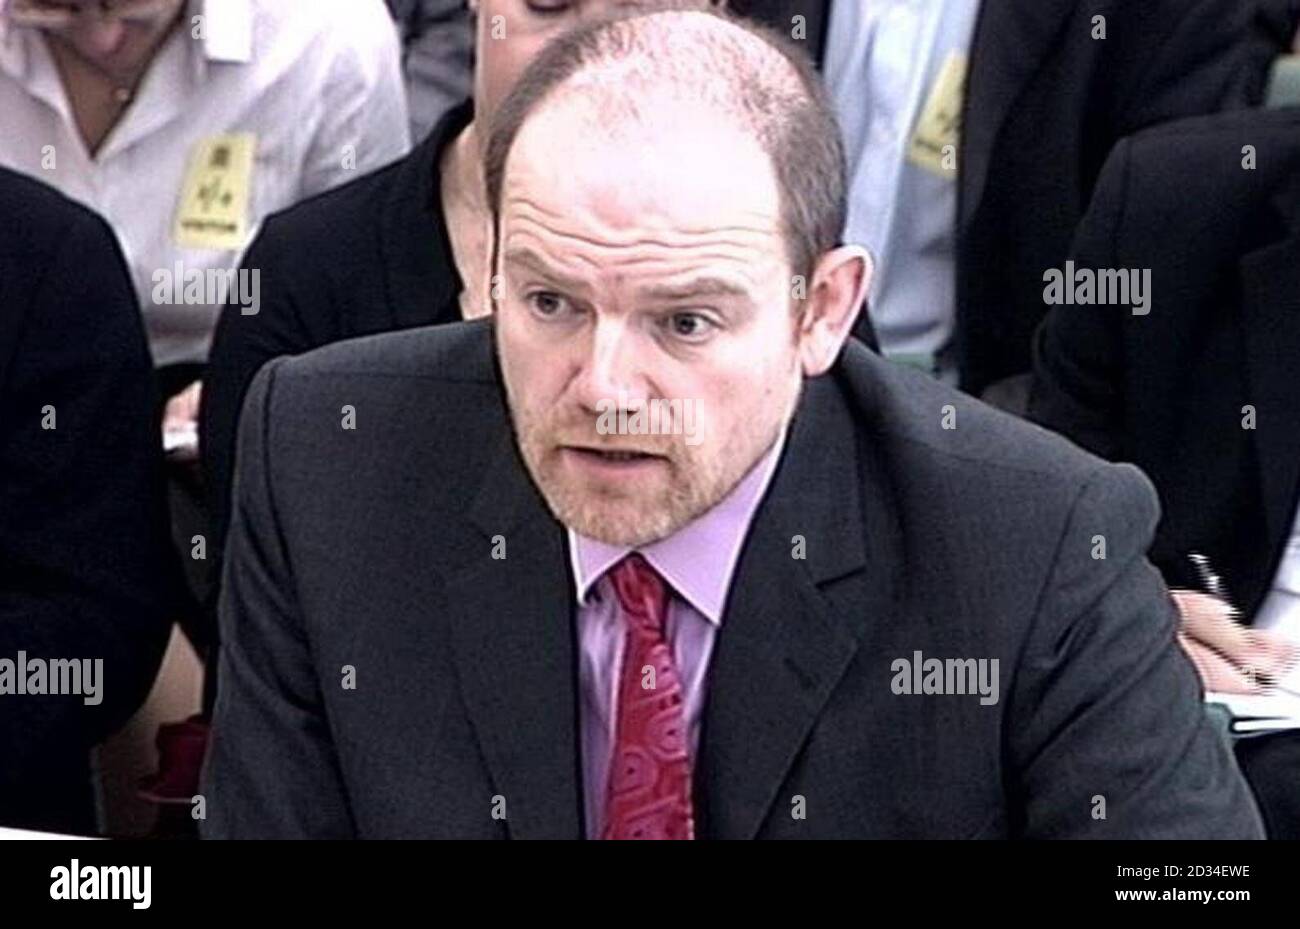 BBC-Generaldirektor Mark Thompson und BBC-Vorsitzender Michael Grade (nicht abgebildet) stehen einem Ausschuss von Abgeordneten, um ihren Fall vorzubringen, um die Lizenzgebühr um 2.3% über die Inflation jedes Jahr zu erhöhen, Dienstag, den 11 2005. Oktober. Nach dem Plan könnte die aktuelle Gebühr von Â£126.50 bis 2013 auf fast Â£170 steigen. Das entspricht einem durchschnittlichen jährlichen Anstieg von Â£3.14 pro Haushalt vor der Inflation. Thompson sprach sich für die oben genannte Inflation Lizenzgebühr Abrechnung von 2007 bis 2013, sagen, dass das zusätzliche Geld benötigt wird, um die digitale Umstellung zu finanzieren und bessere Qualität Originalprogramme statt Endles produzieren Stockfoto